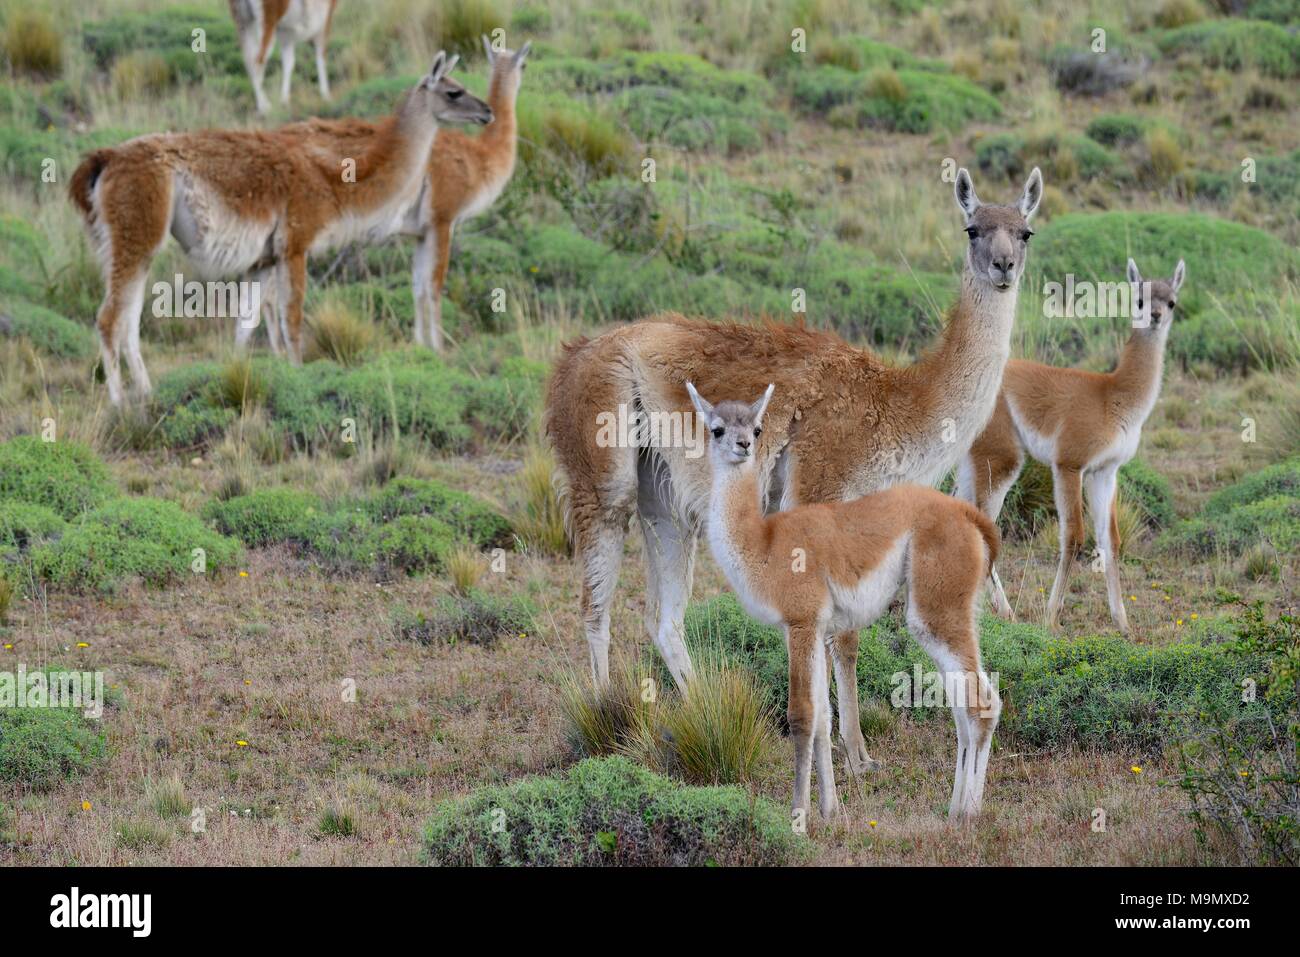 Troupeau de guanacos (Lama guanicoe) avec de jeunes animaux, Valle Chacabuco, Región de Aysén, Chili Banque D'Images